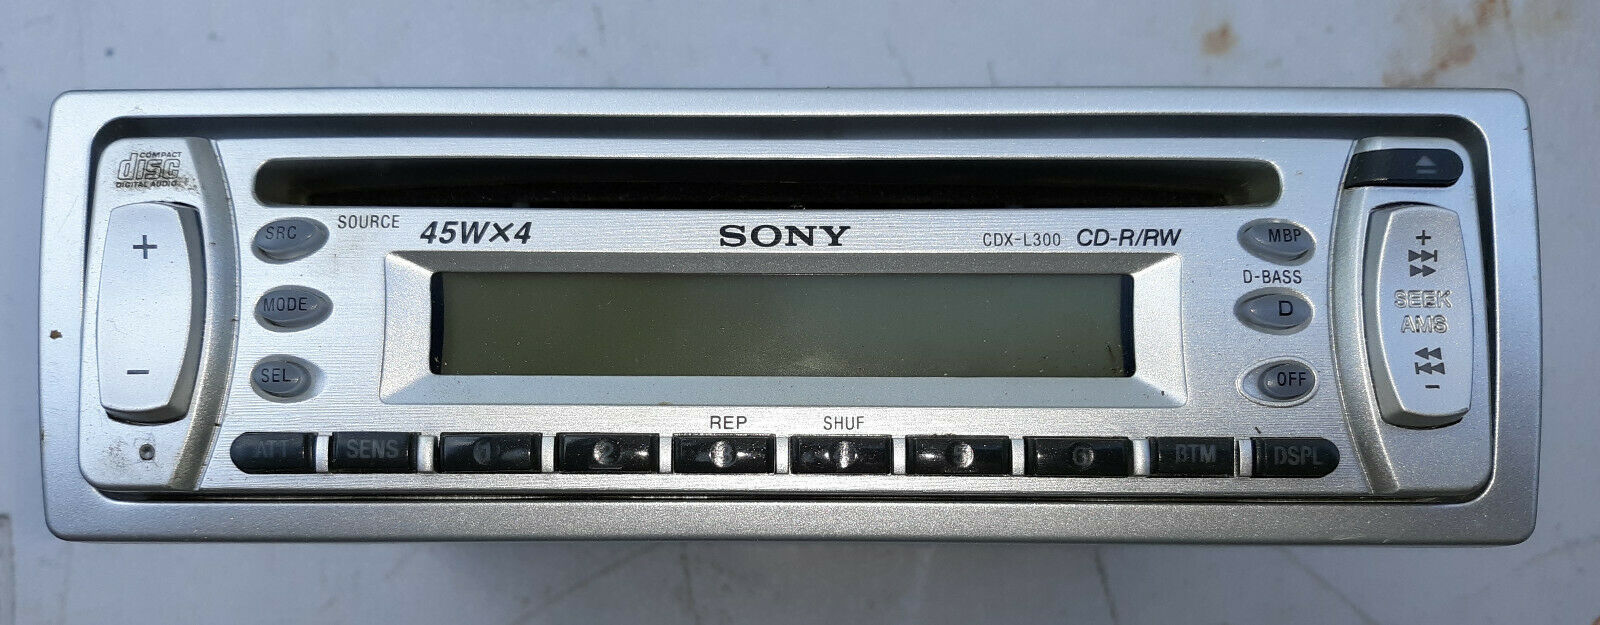 21KK61 Sony Car Radio, CDX-L300, Not and 50 similar items